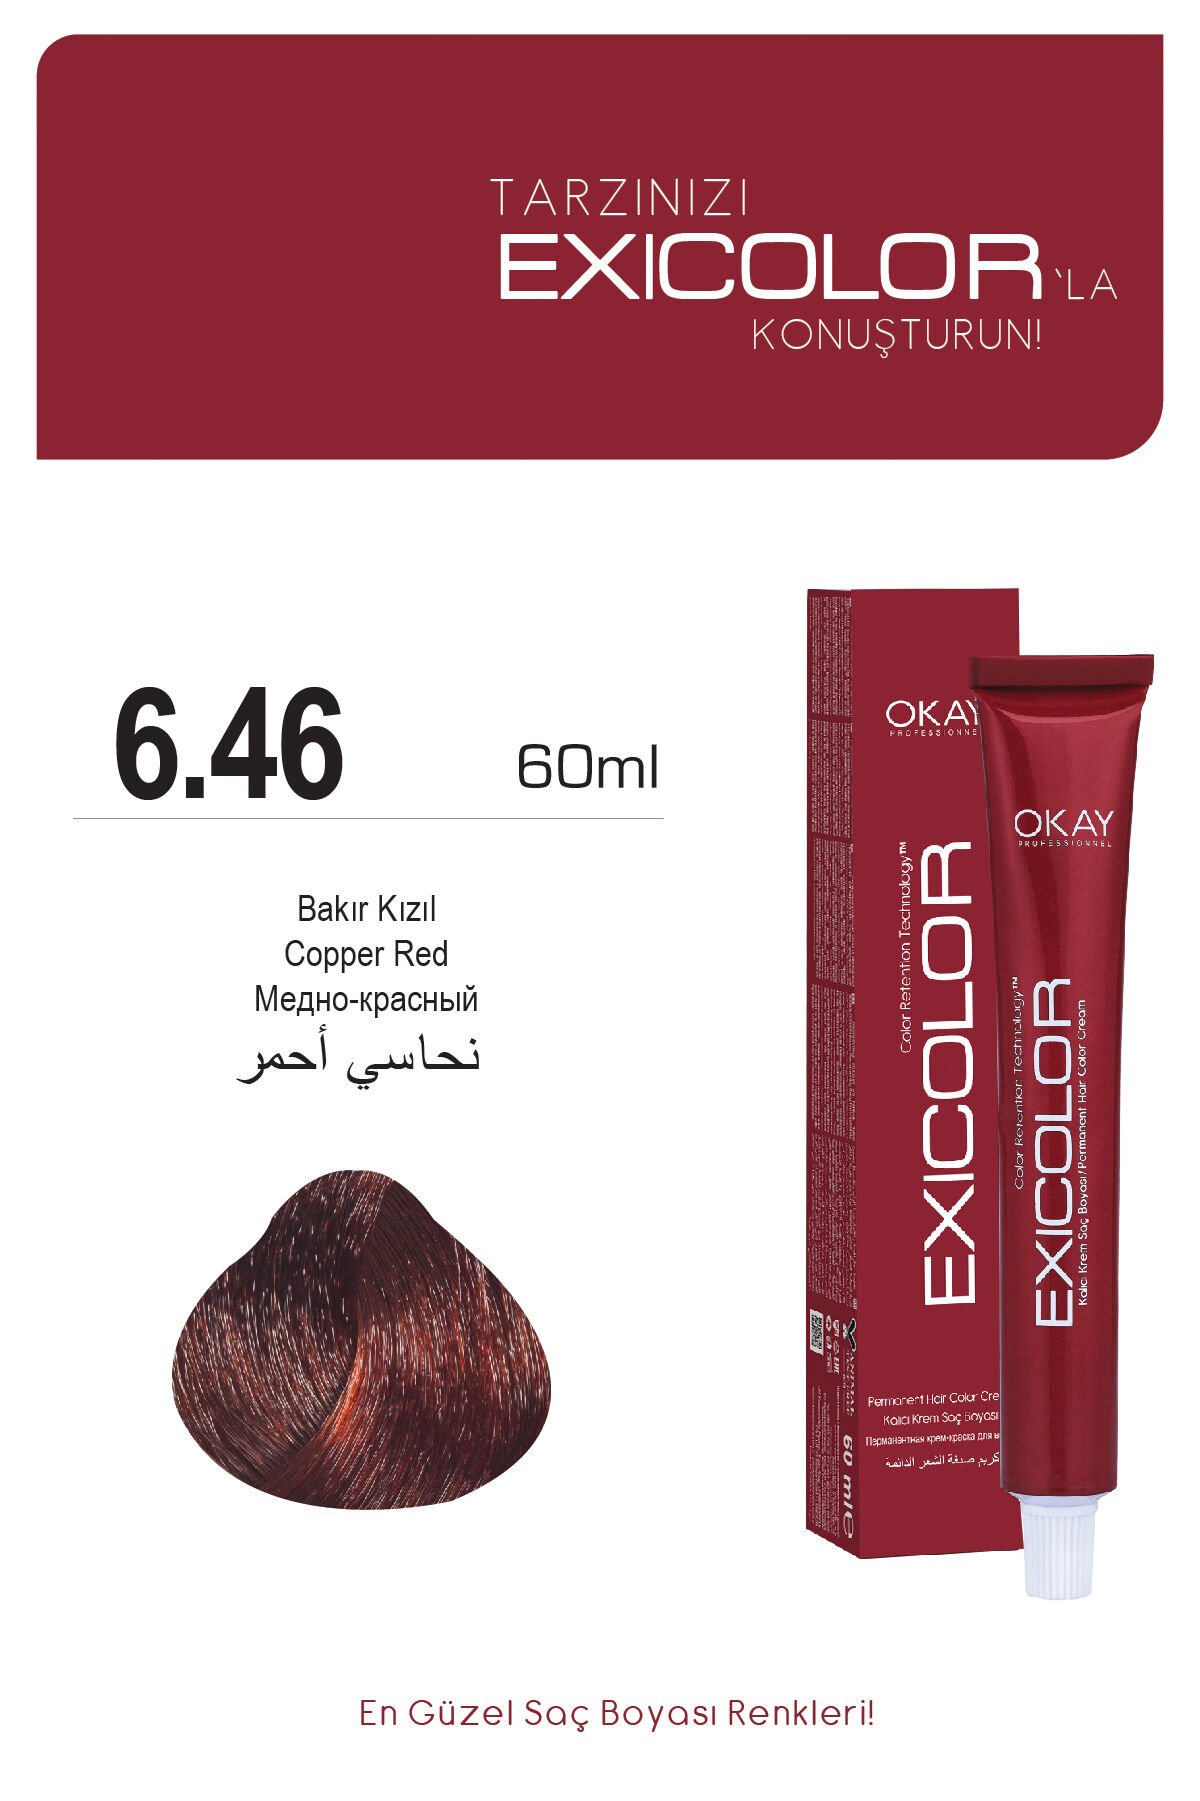 Exicolor 6.46 Bakır Kızıl - Kalıcı Krem Saç Boyası 60 ml Tüp